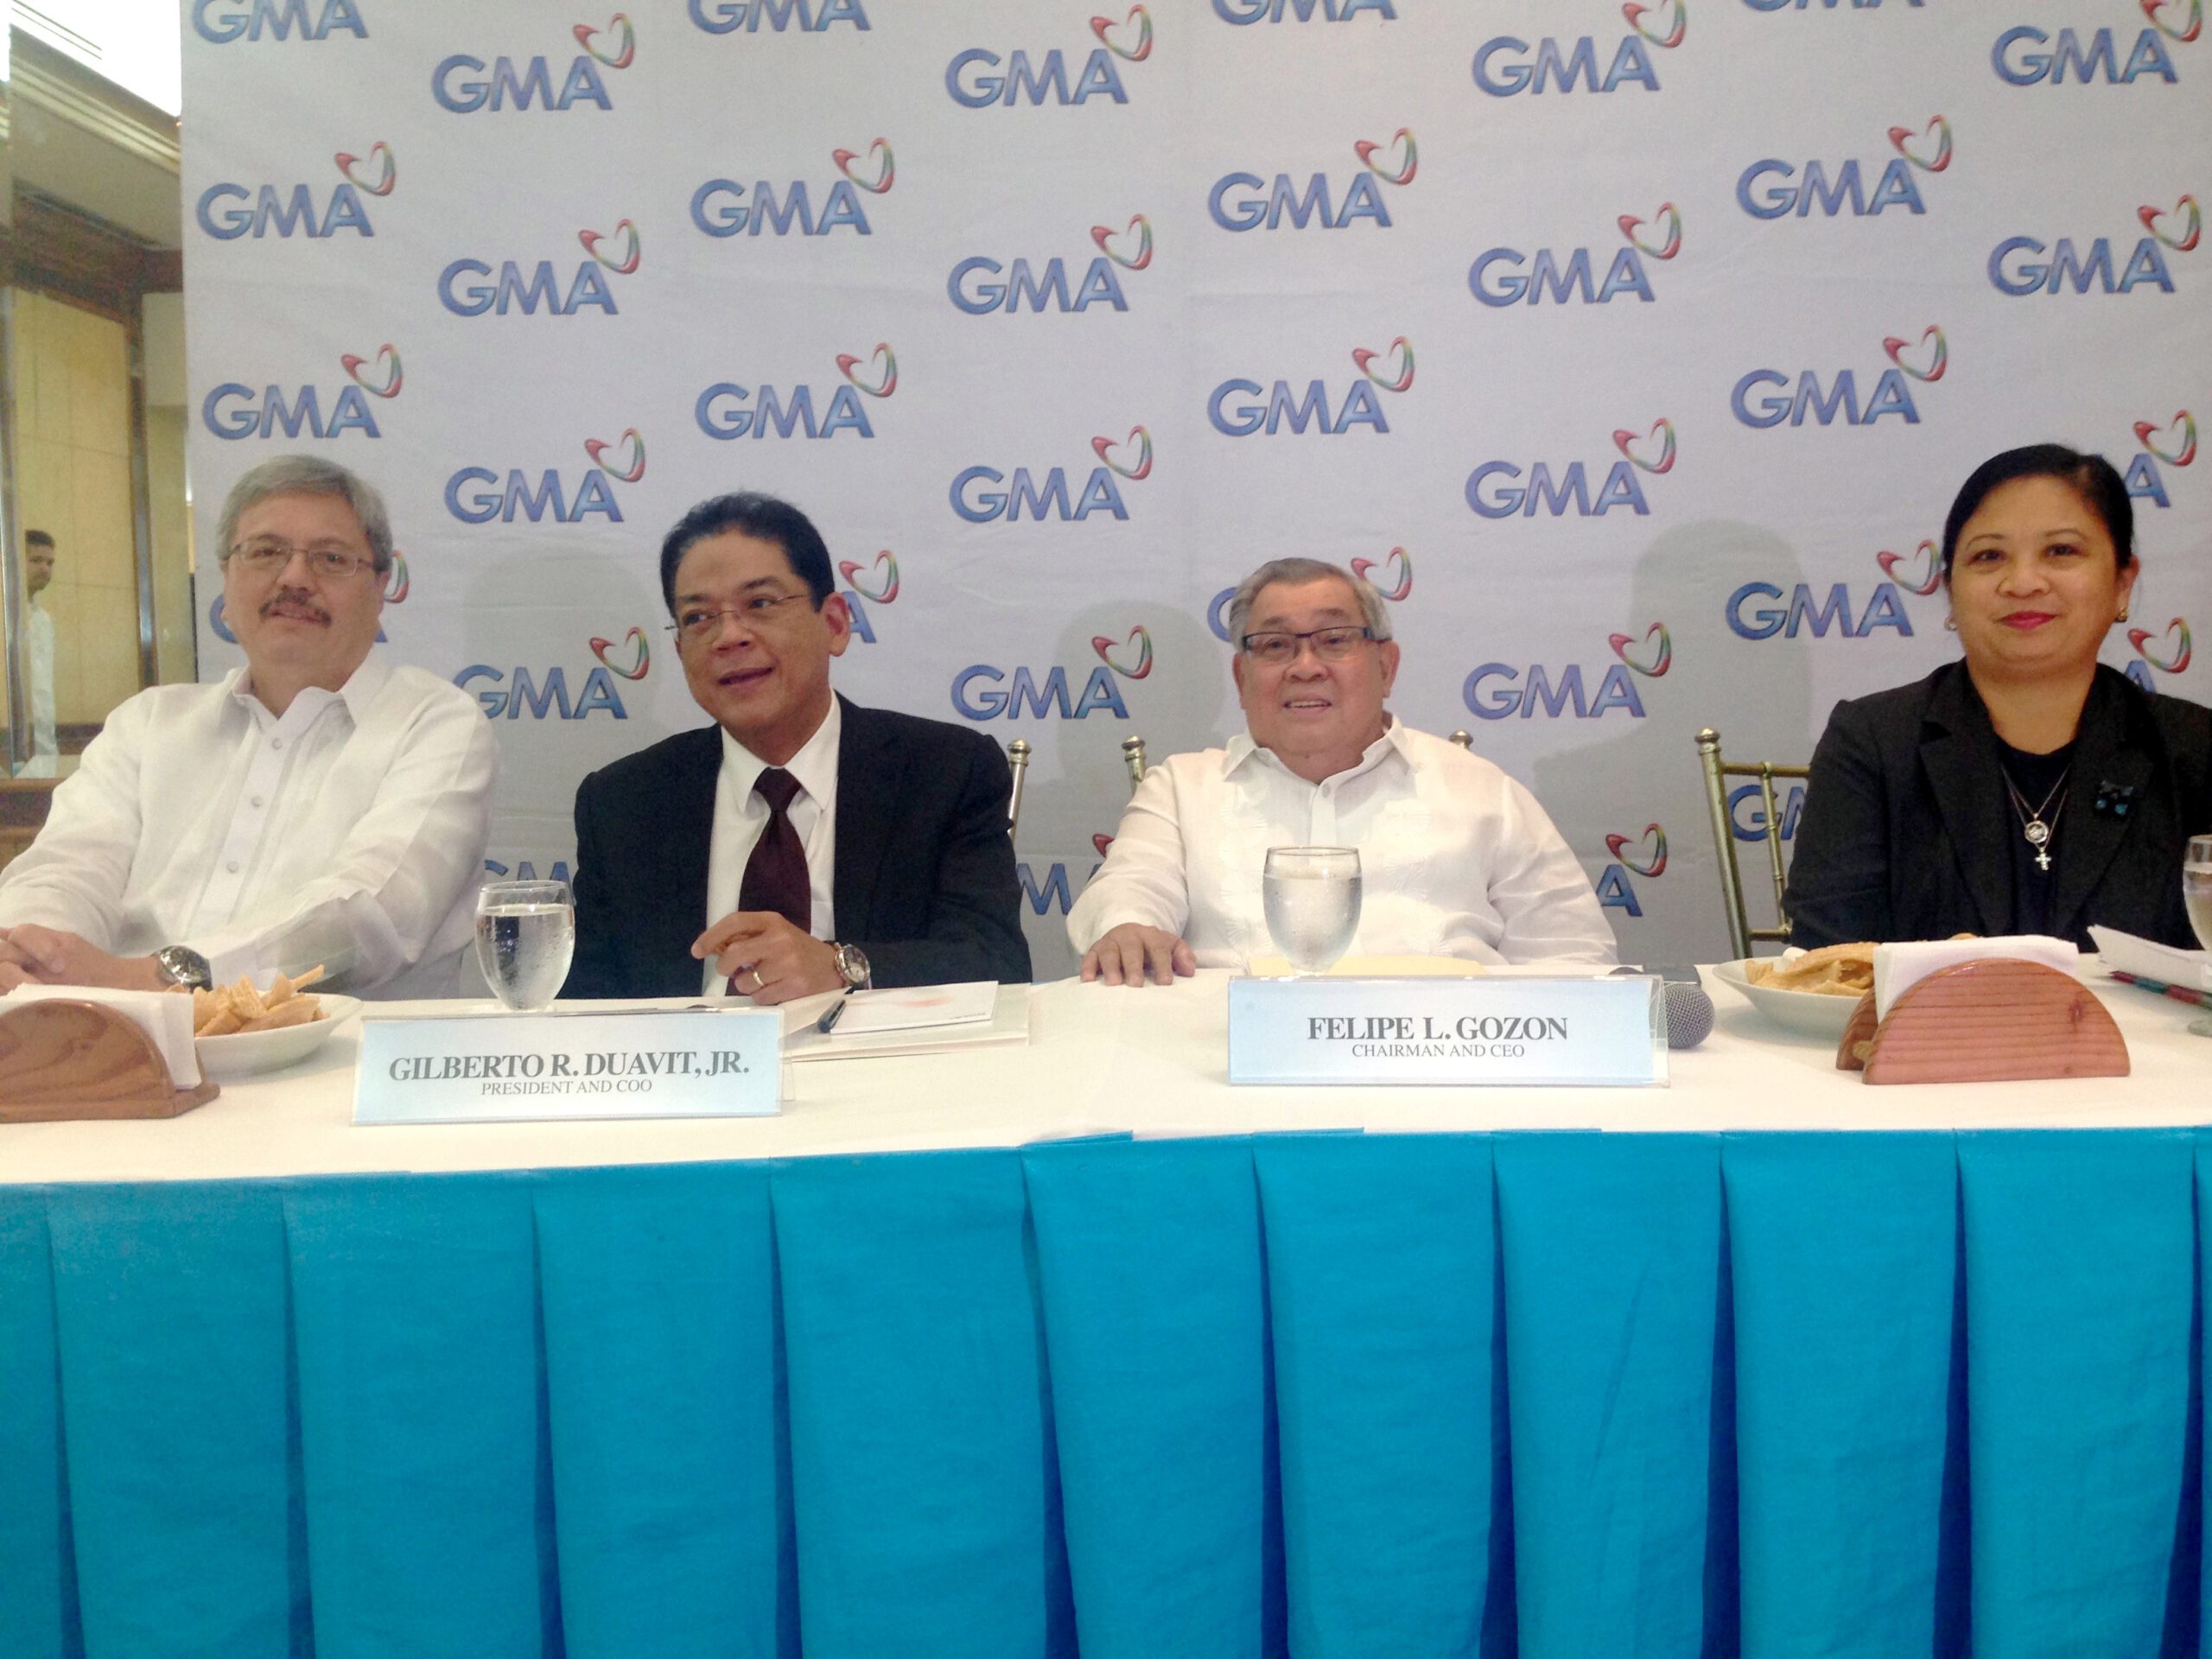 GMA’s Gozon open to ‘reasonable settlement’ with Ramon Ang